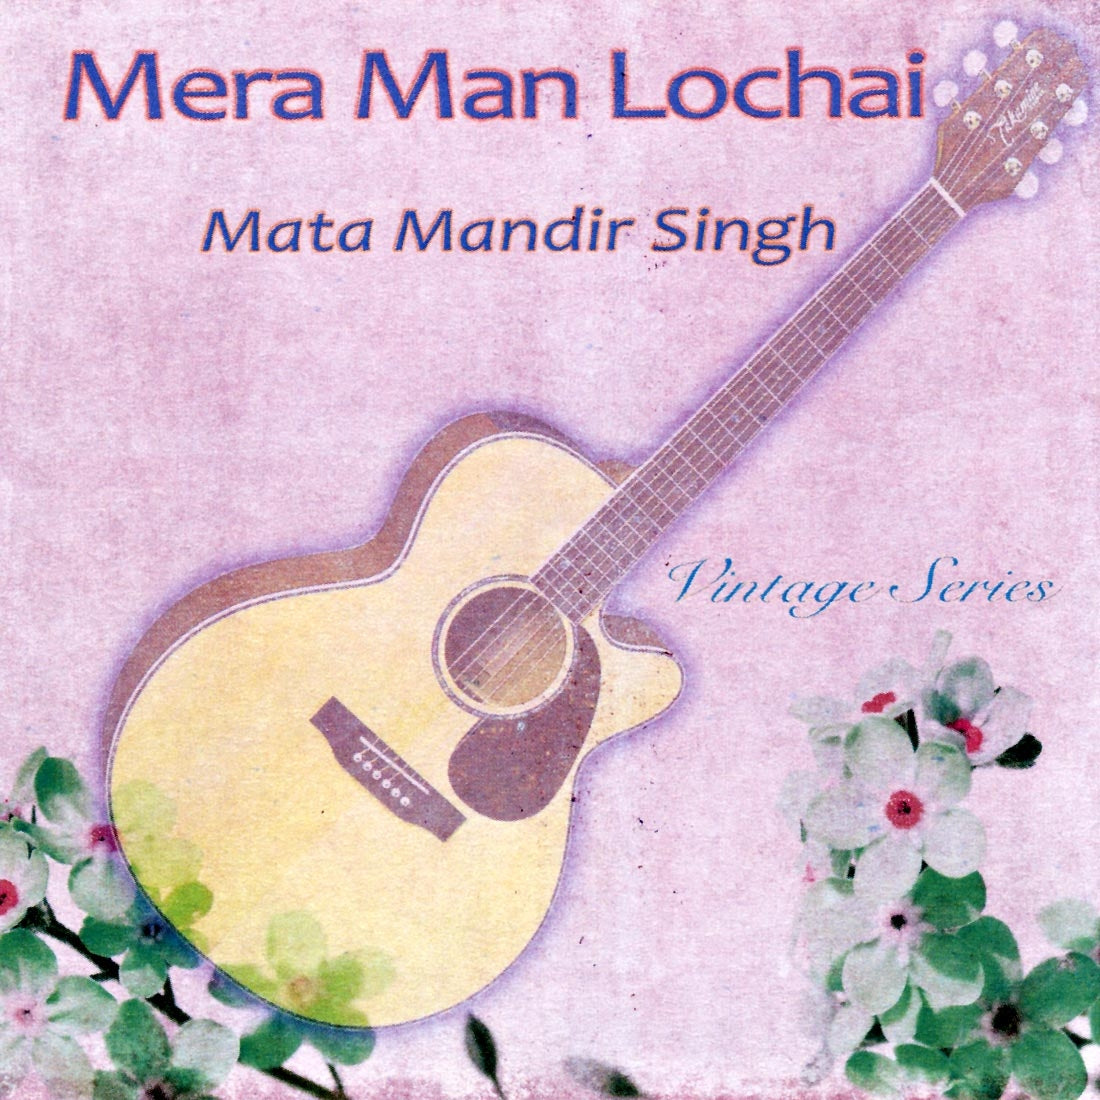 Mera Man Lochai - Mata Mandir Singh complet